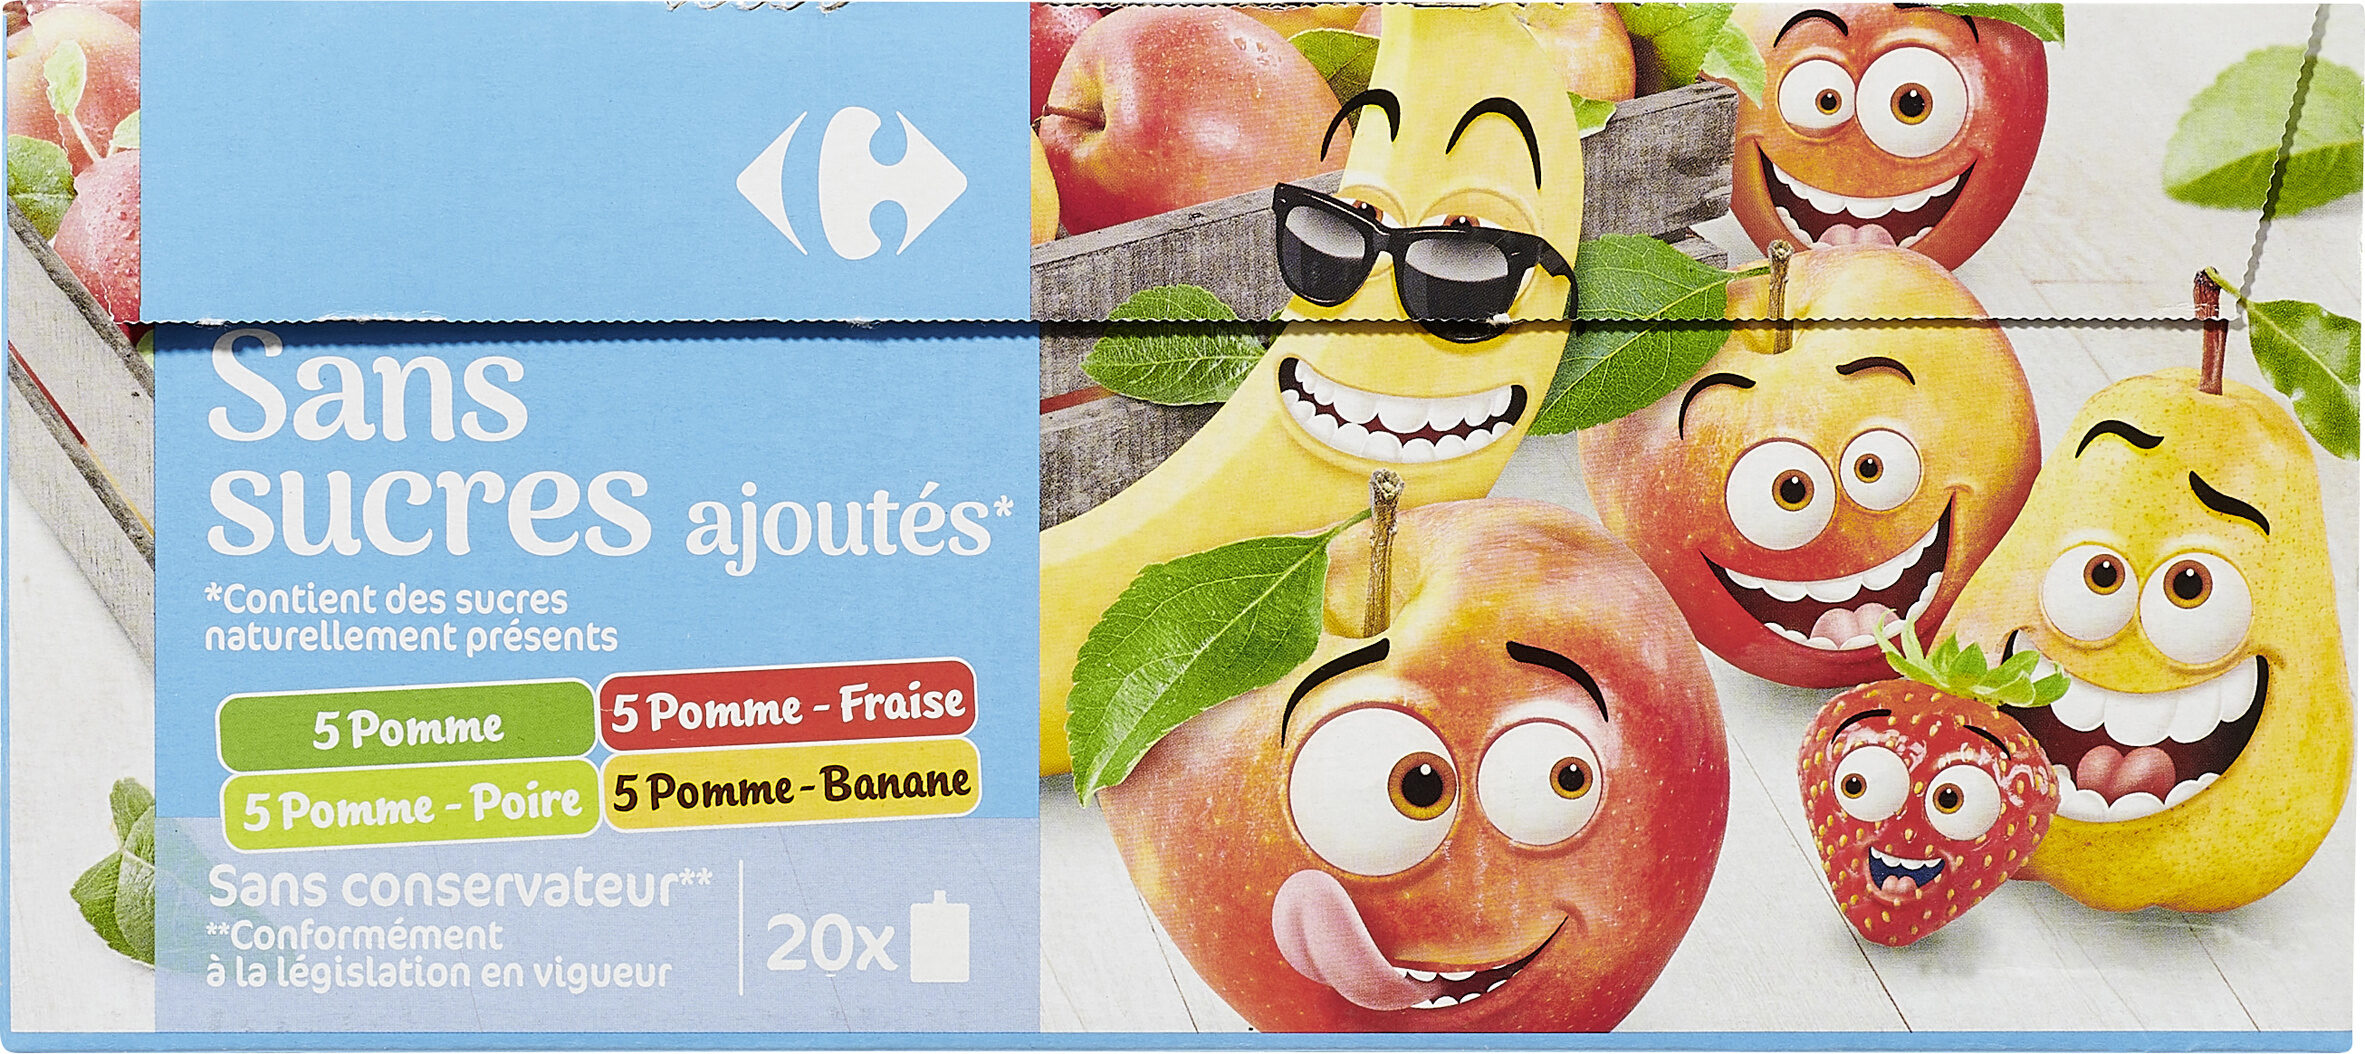 Fruit &Cie 18 POMME 18 POMME FRAISE 18 POMME POIRE 18 POMME BANANE - Producte - fr